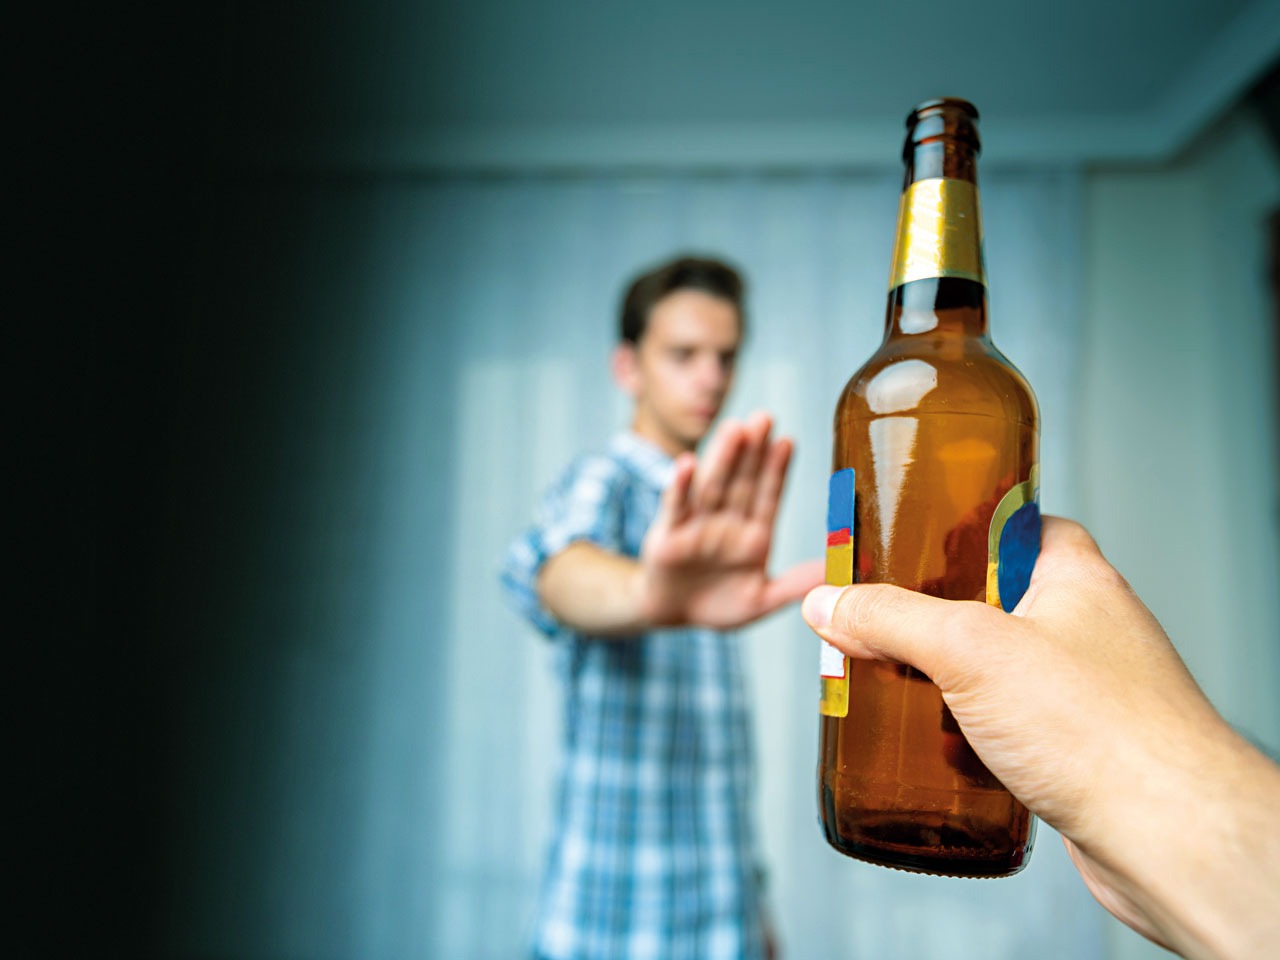 Báo động mới của WHO về việc sử dụng rượu và thuốc lá điện tử của thanh thiếu niên